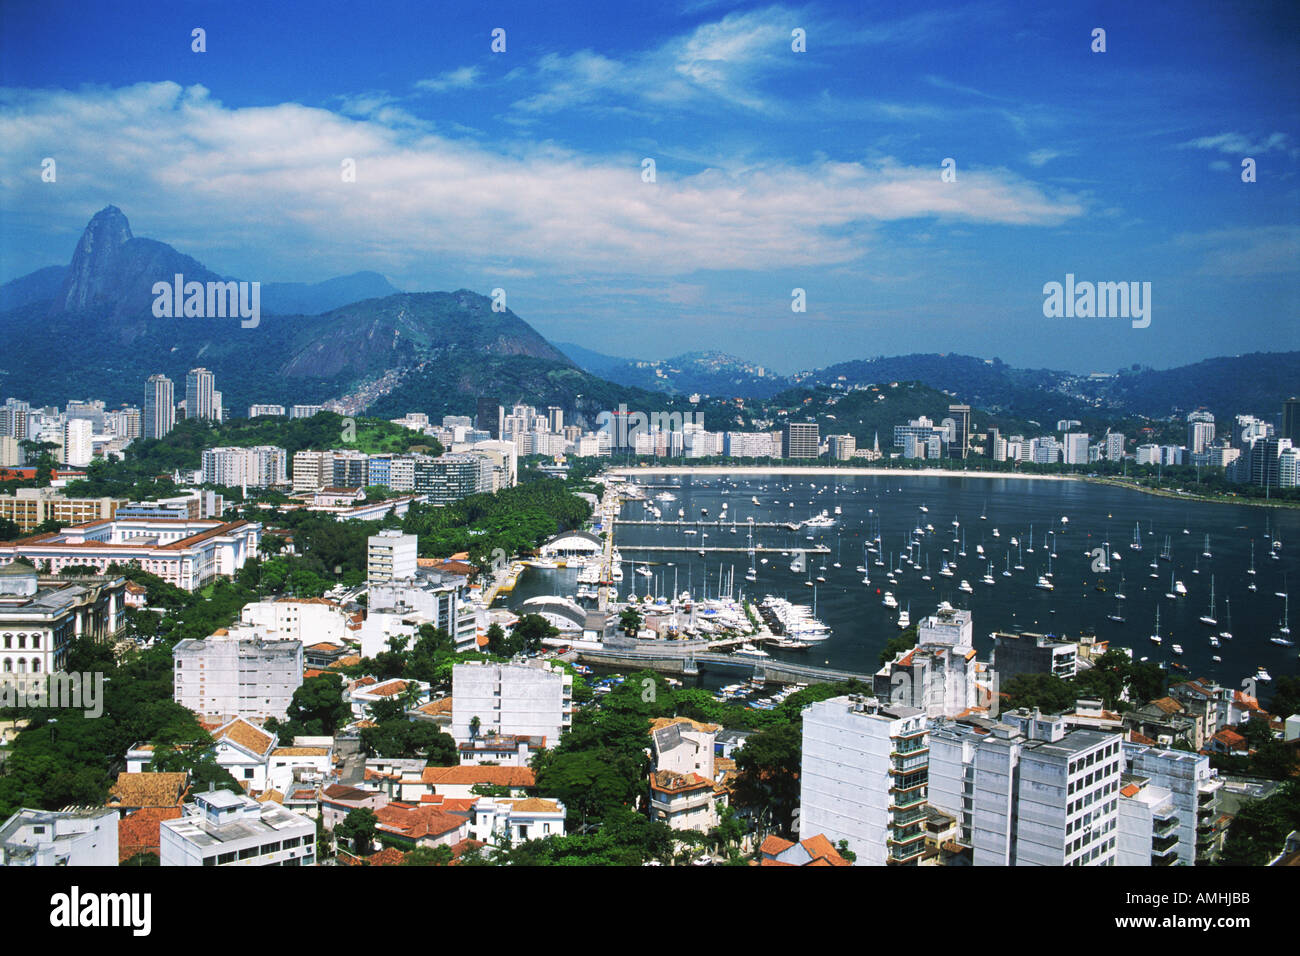 Beach and boats at Bay of Botafogo in Rio de Janeiro with Corcovado Mountain Stock Photo